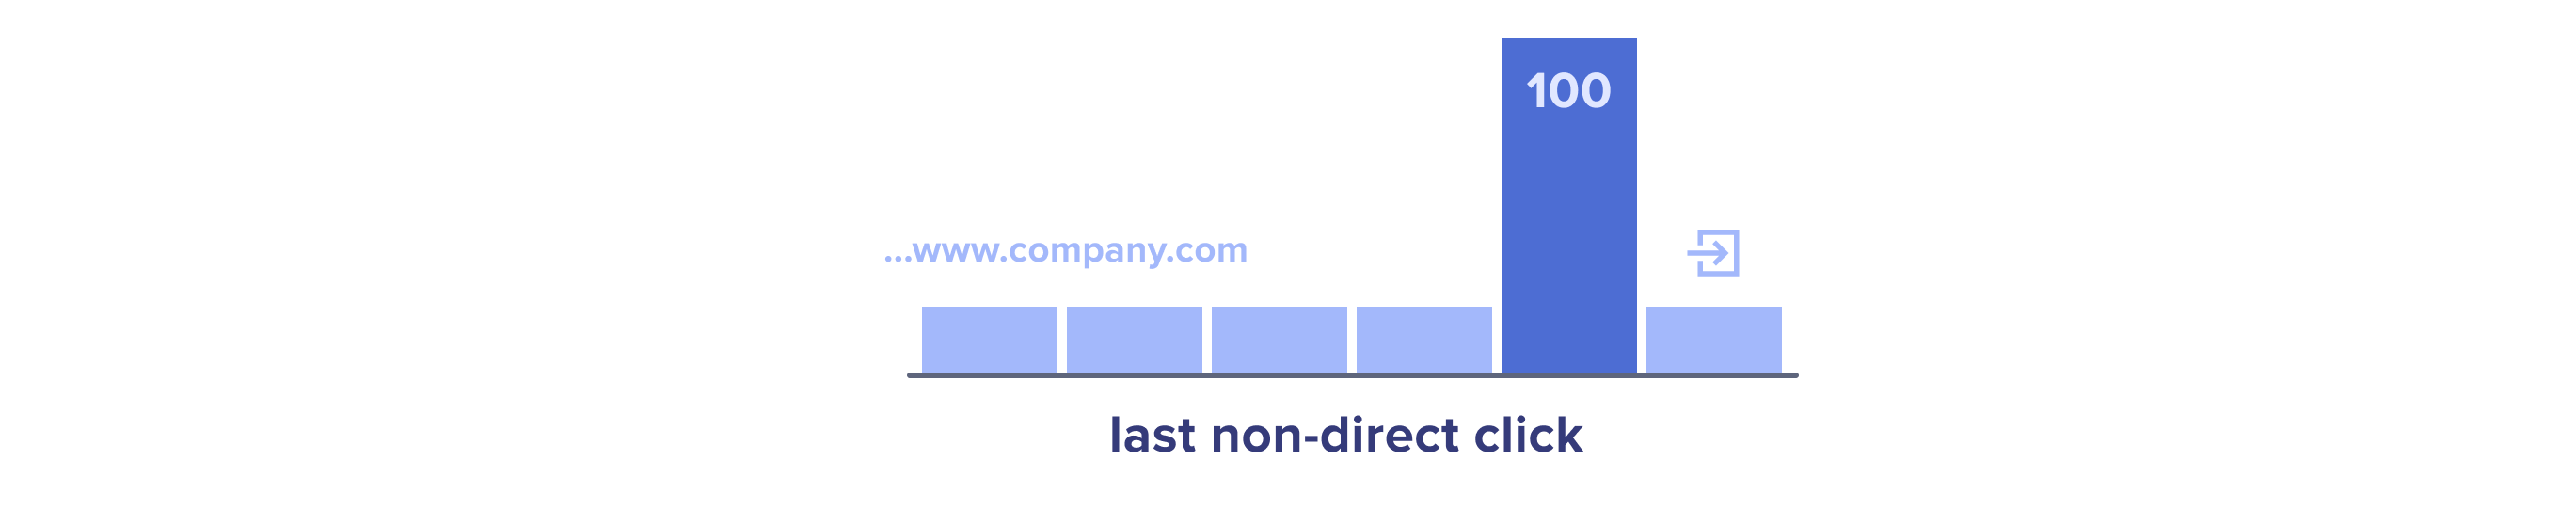 Last non-direct click attribution model